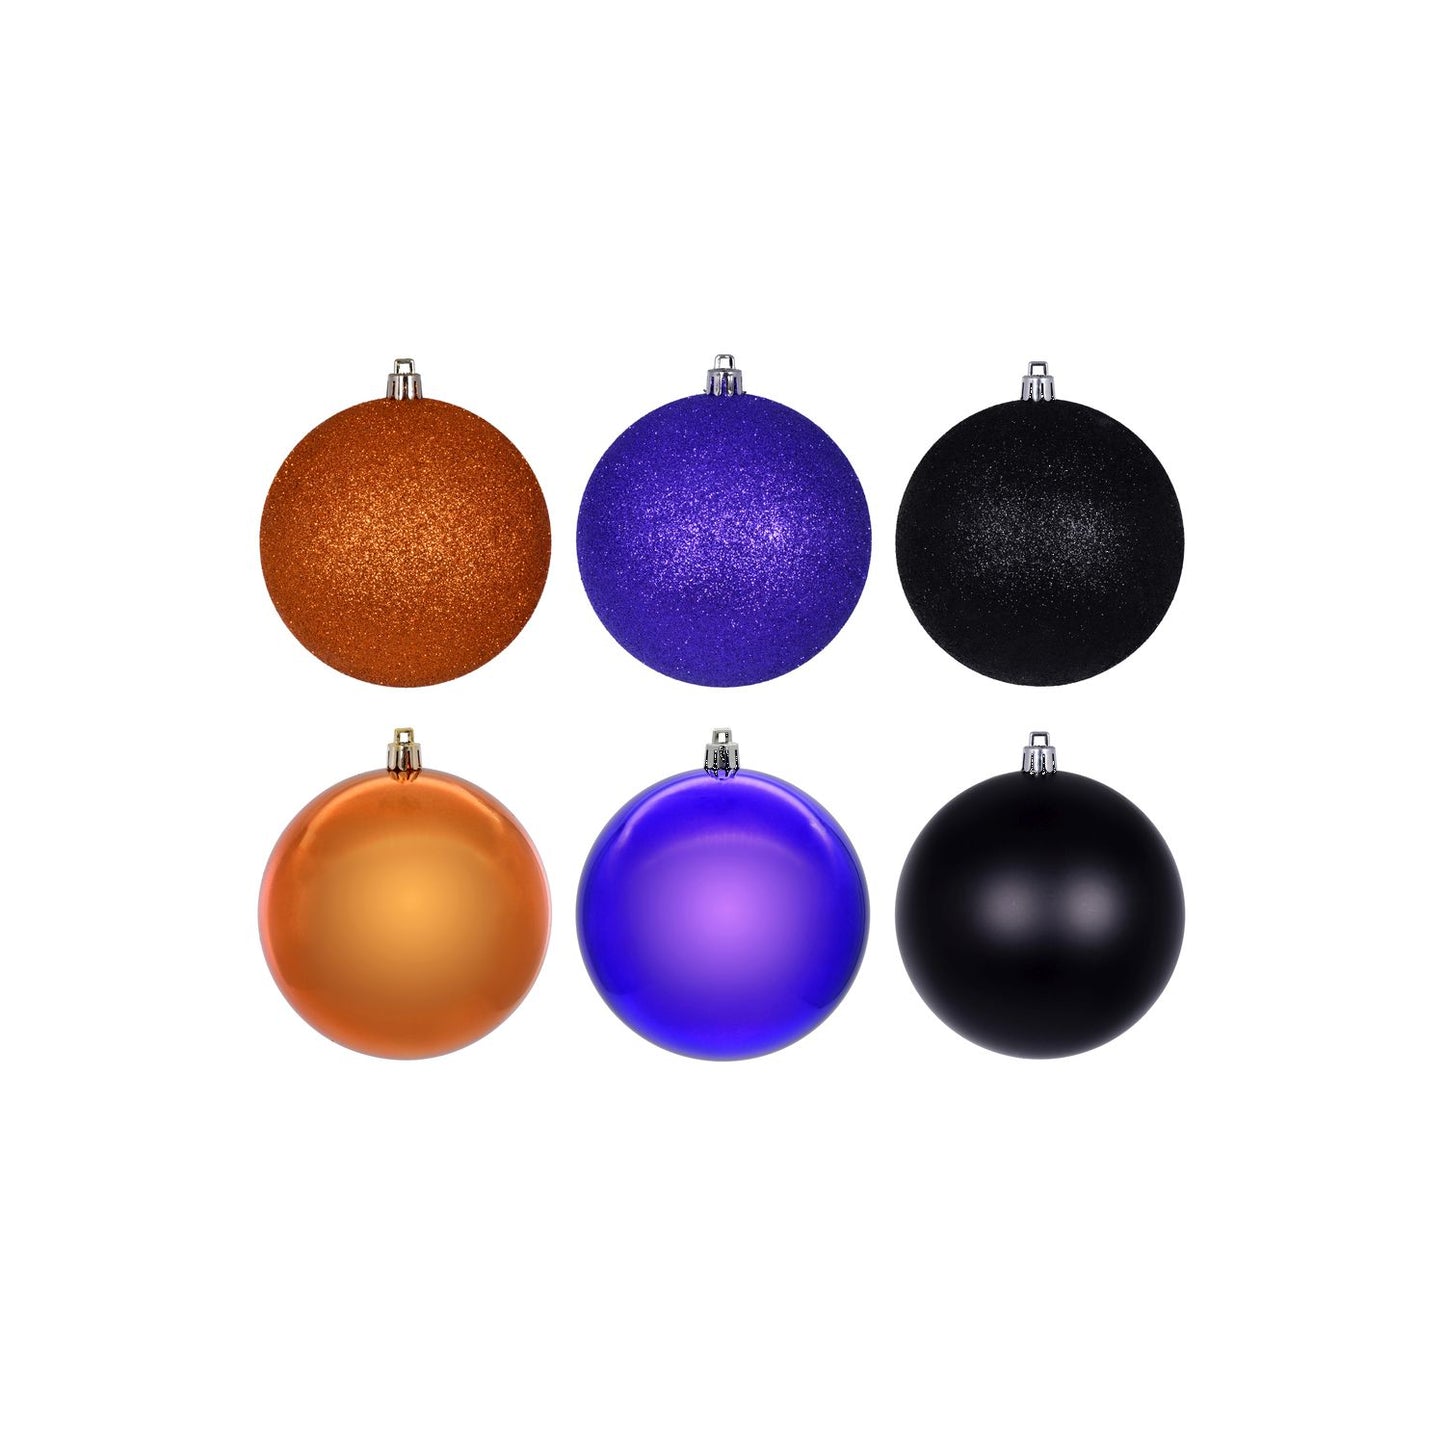 Vickerman 3" Purple, Orange, And Black Ornament Assortment, 12 Per Box